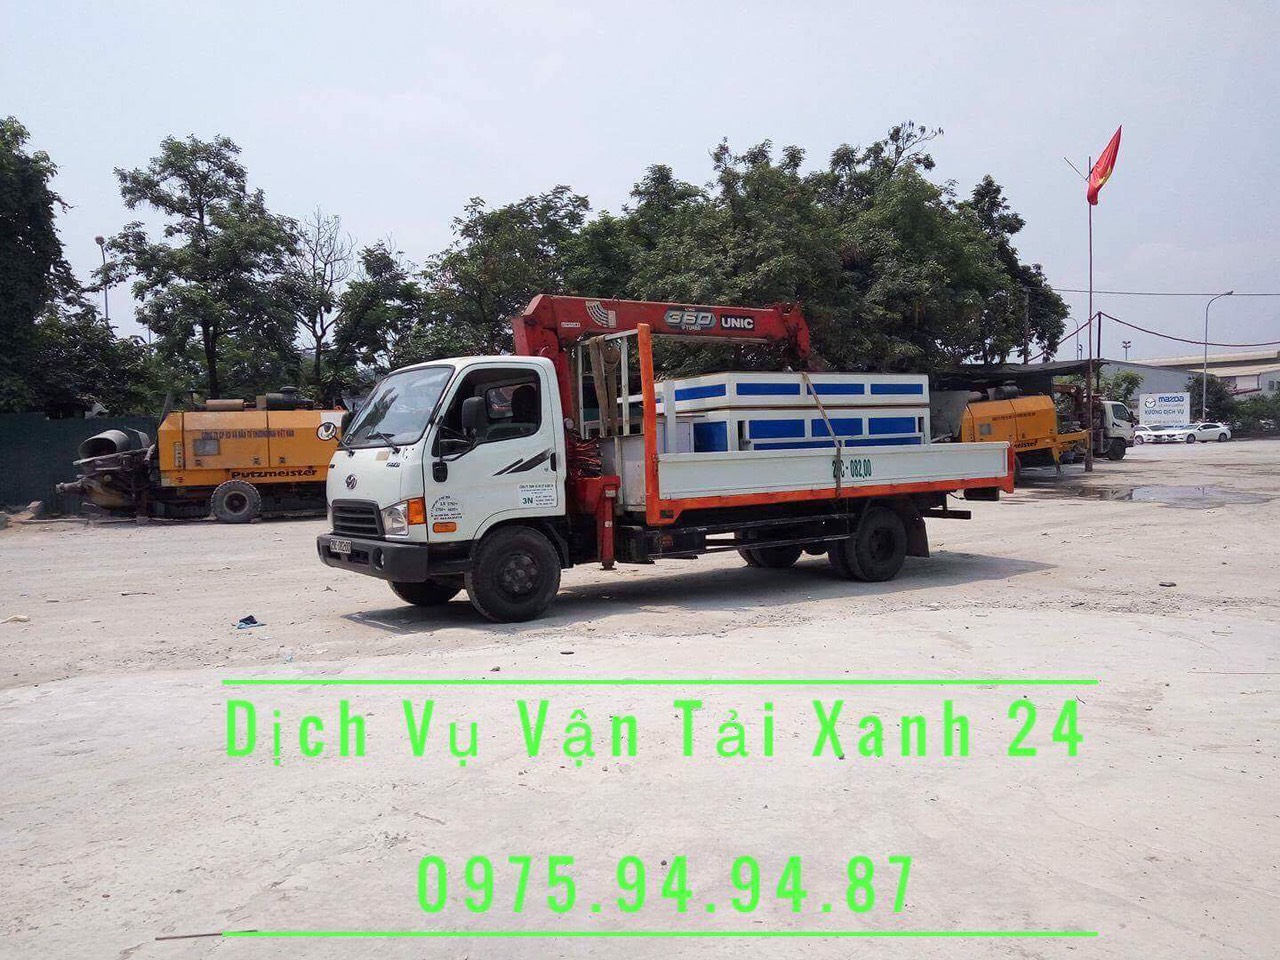 Cho thuê xe cẩu uy tín chất lượng, an toàn tại Hà Nội